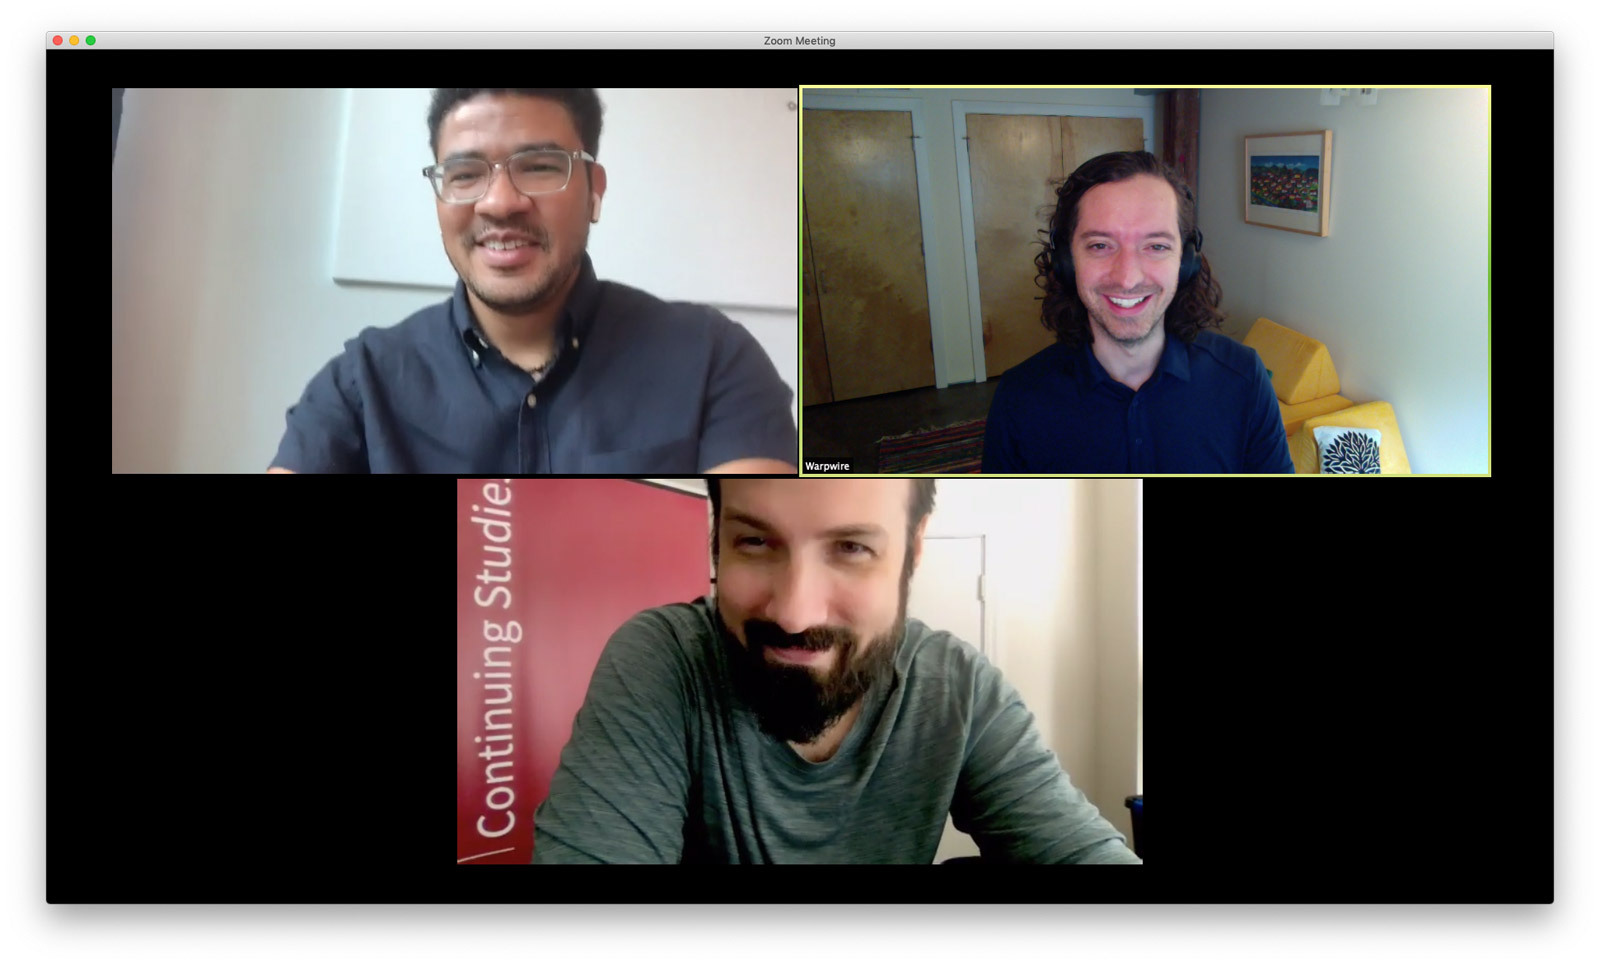 Zoom interview with Warpwire and Stanford Continuing Studies, Matt Hein and Warpwire team.